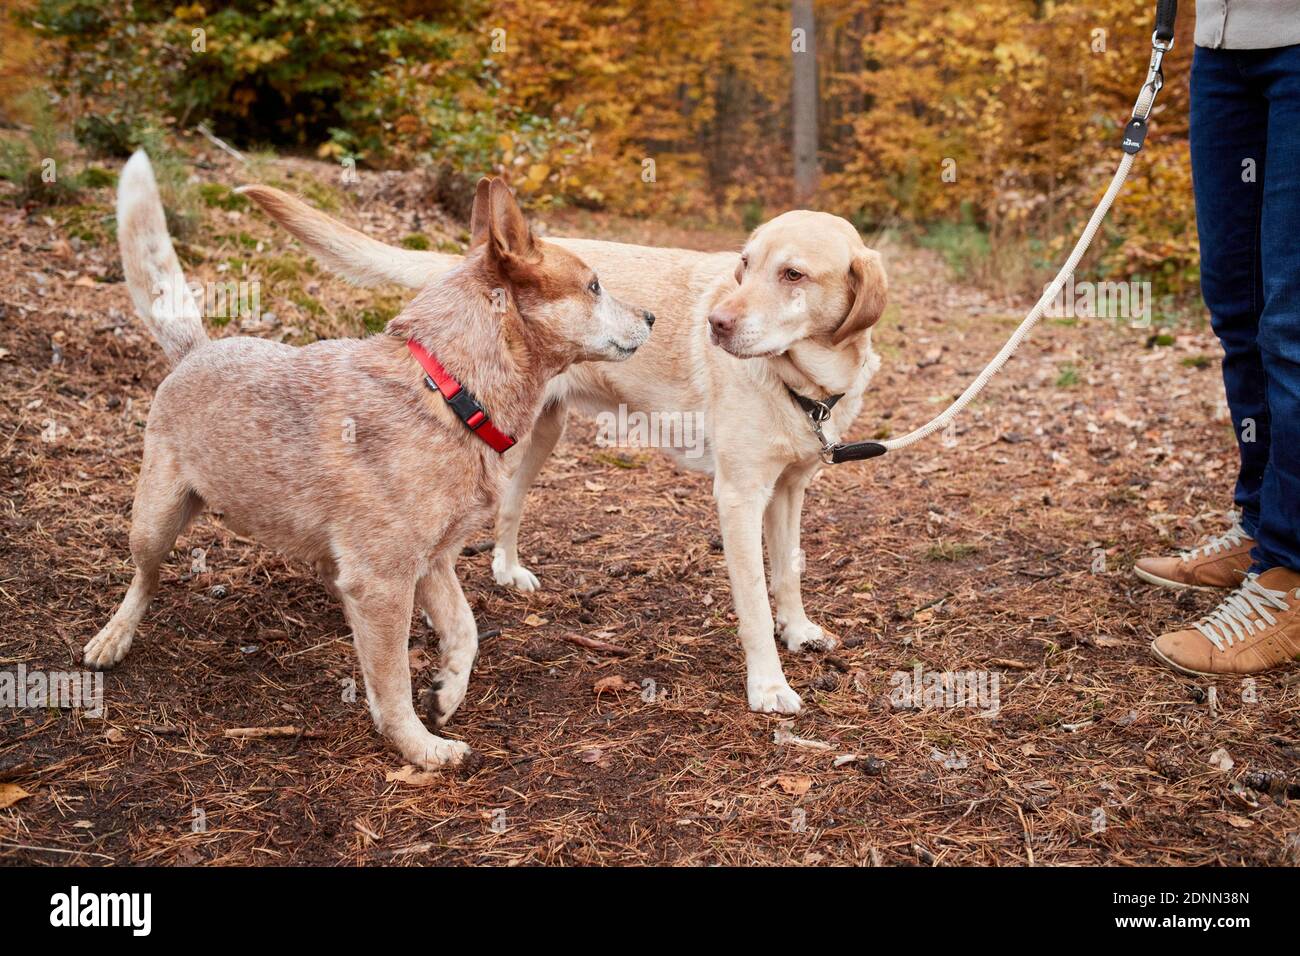 Labrador Retriever e Australian Cattle Dog si incontrano, situazione tesa, contatto indesiderato. Grmany Foto Stock